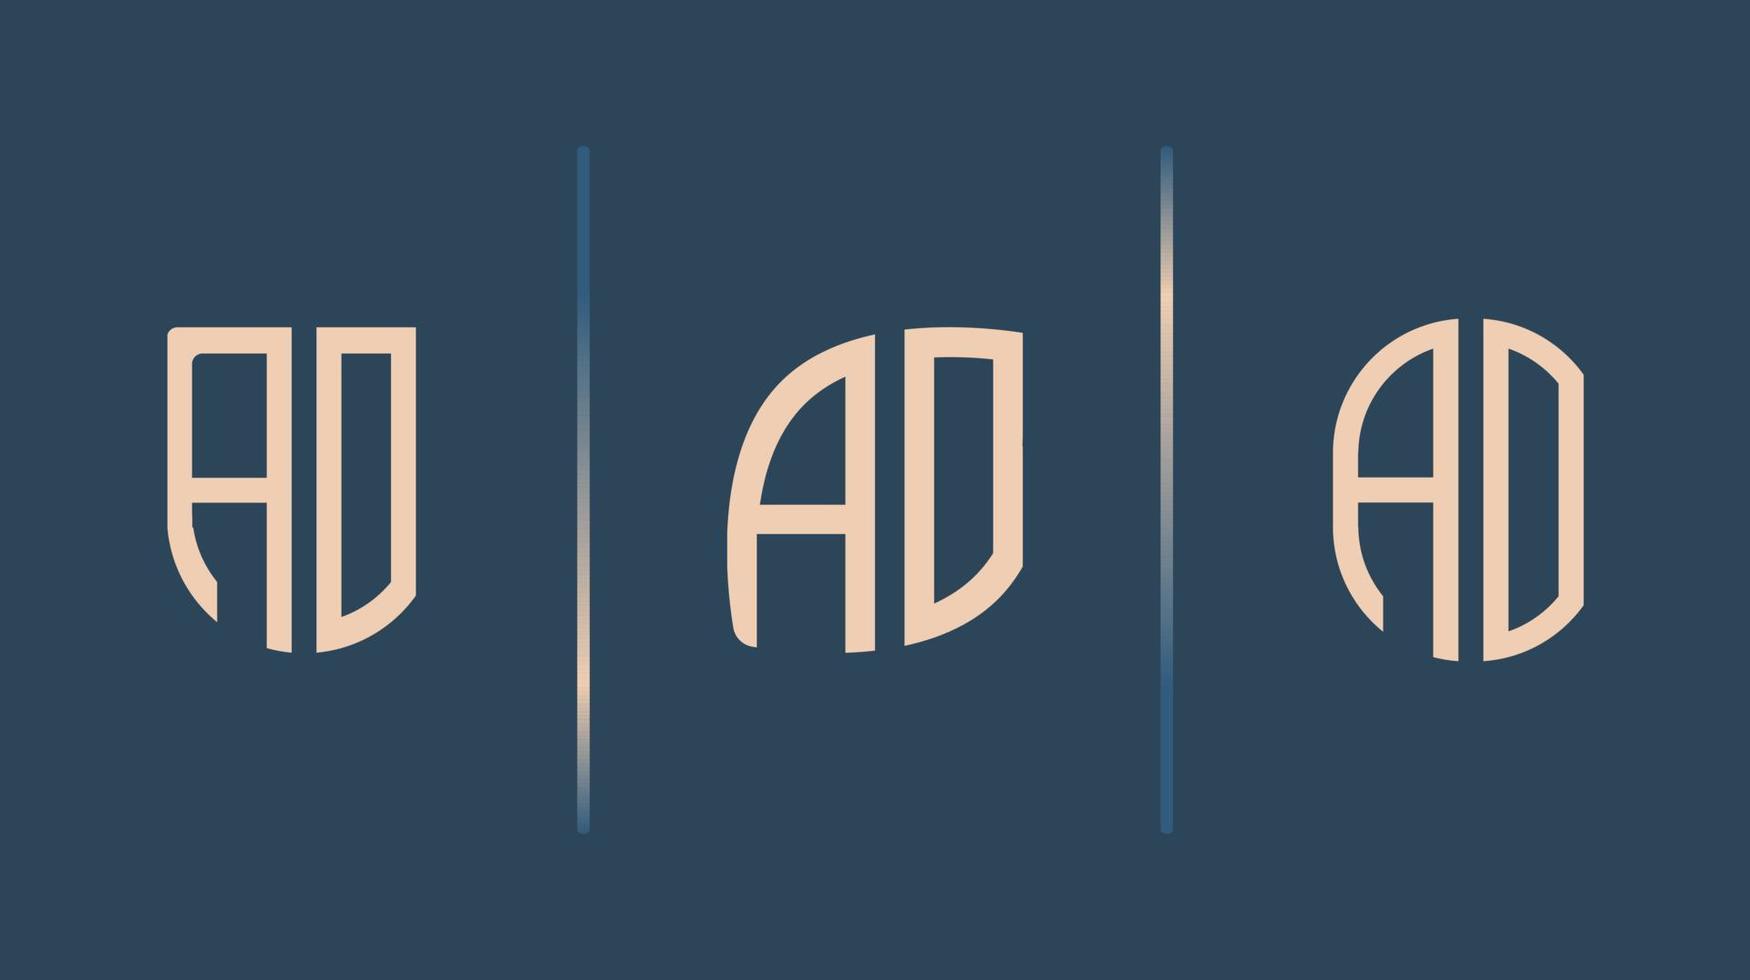 kreative anfangsbuchstaben ao logo design paket. vektor